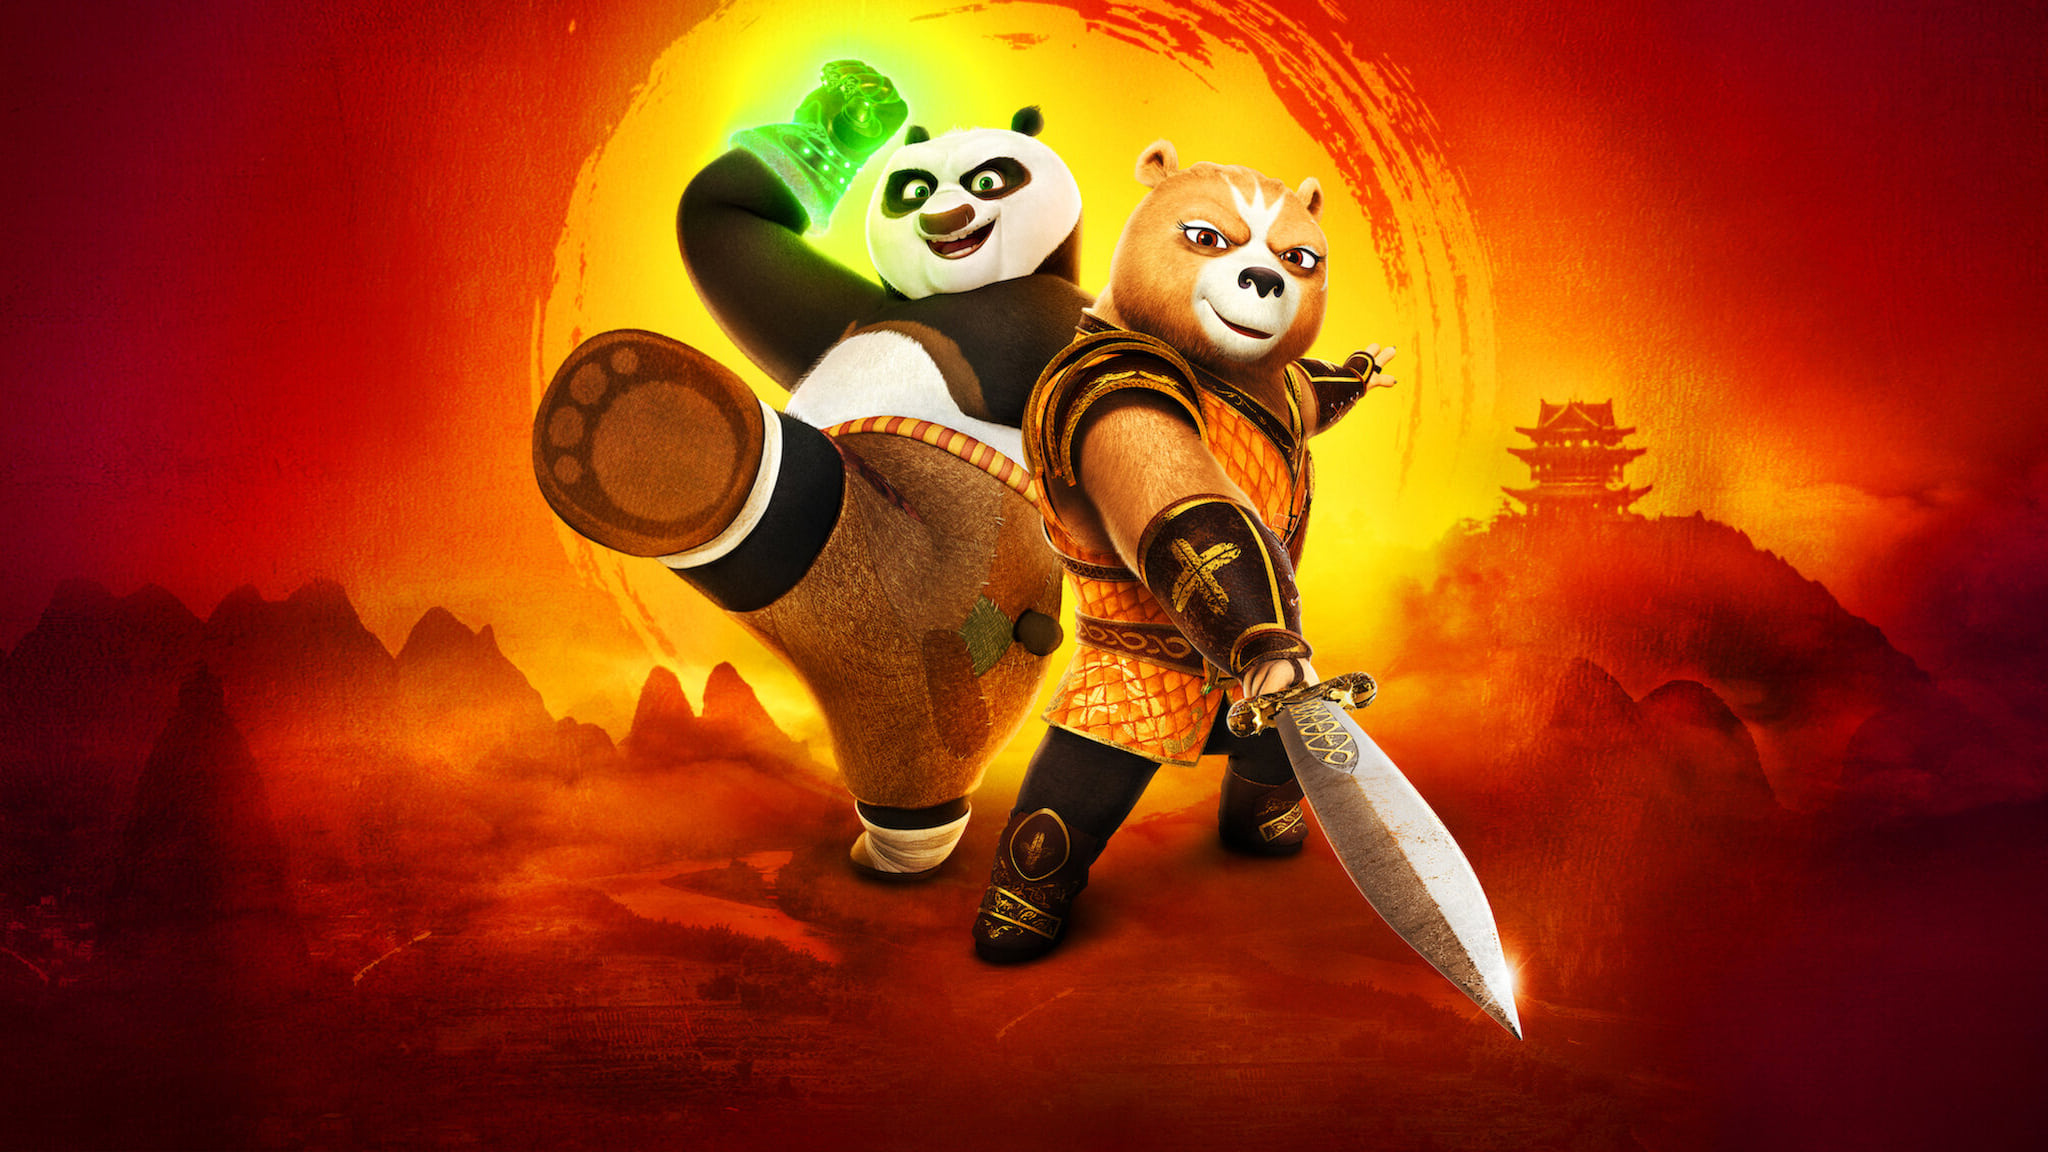 Kung Fu Panda: The Dragon Knight poster